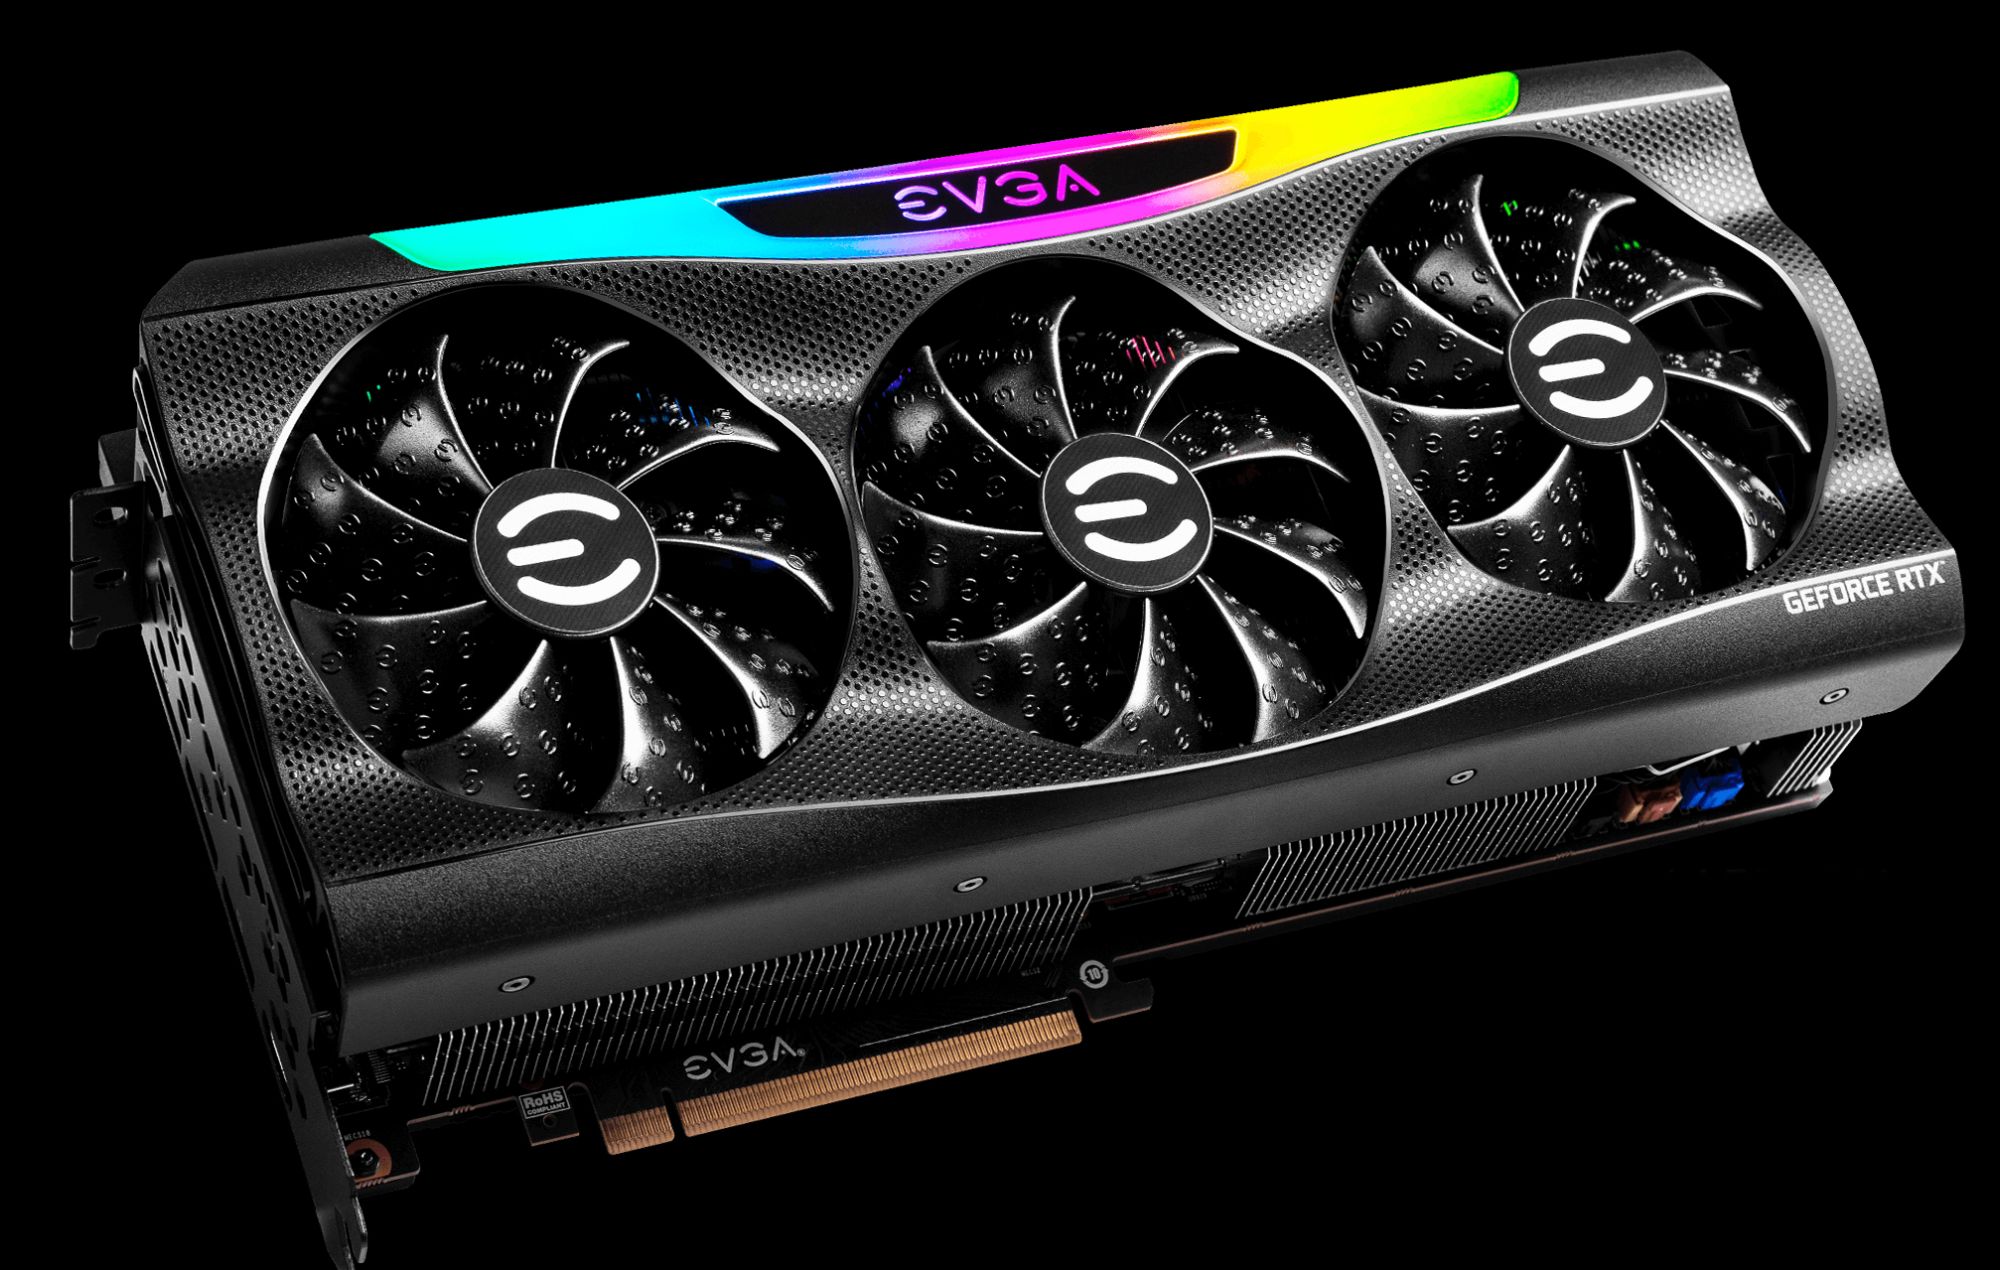 EVGA met fin à son partenariat avec Nvidia et quitte le marché des GPU